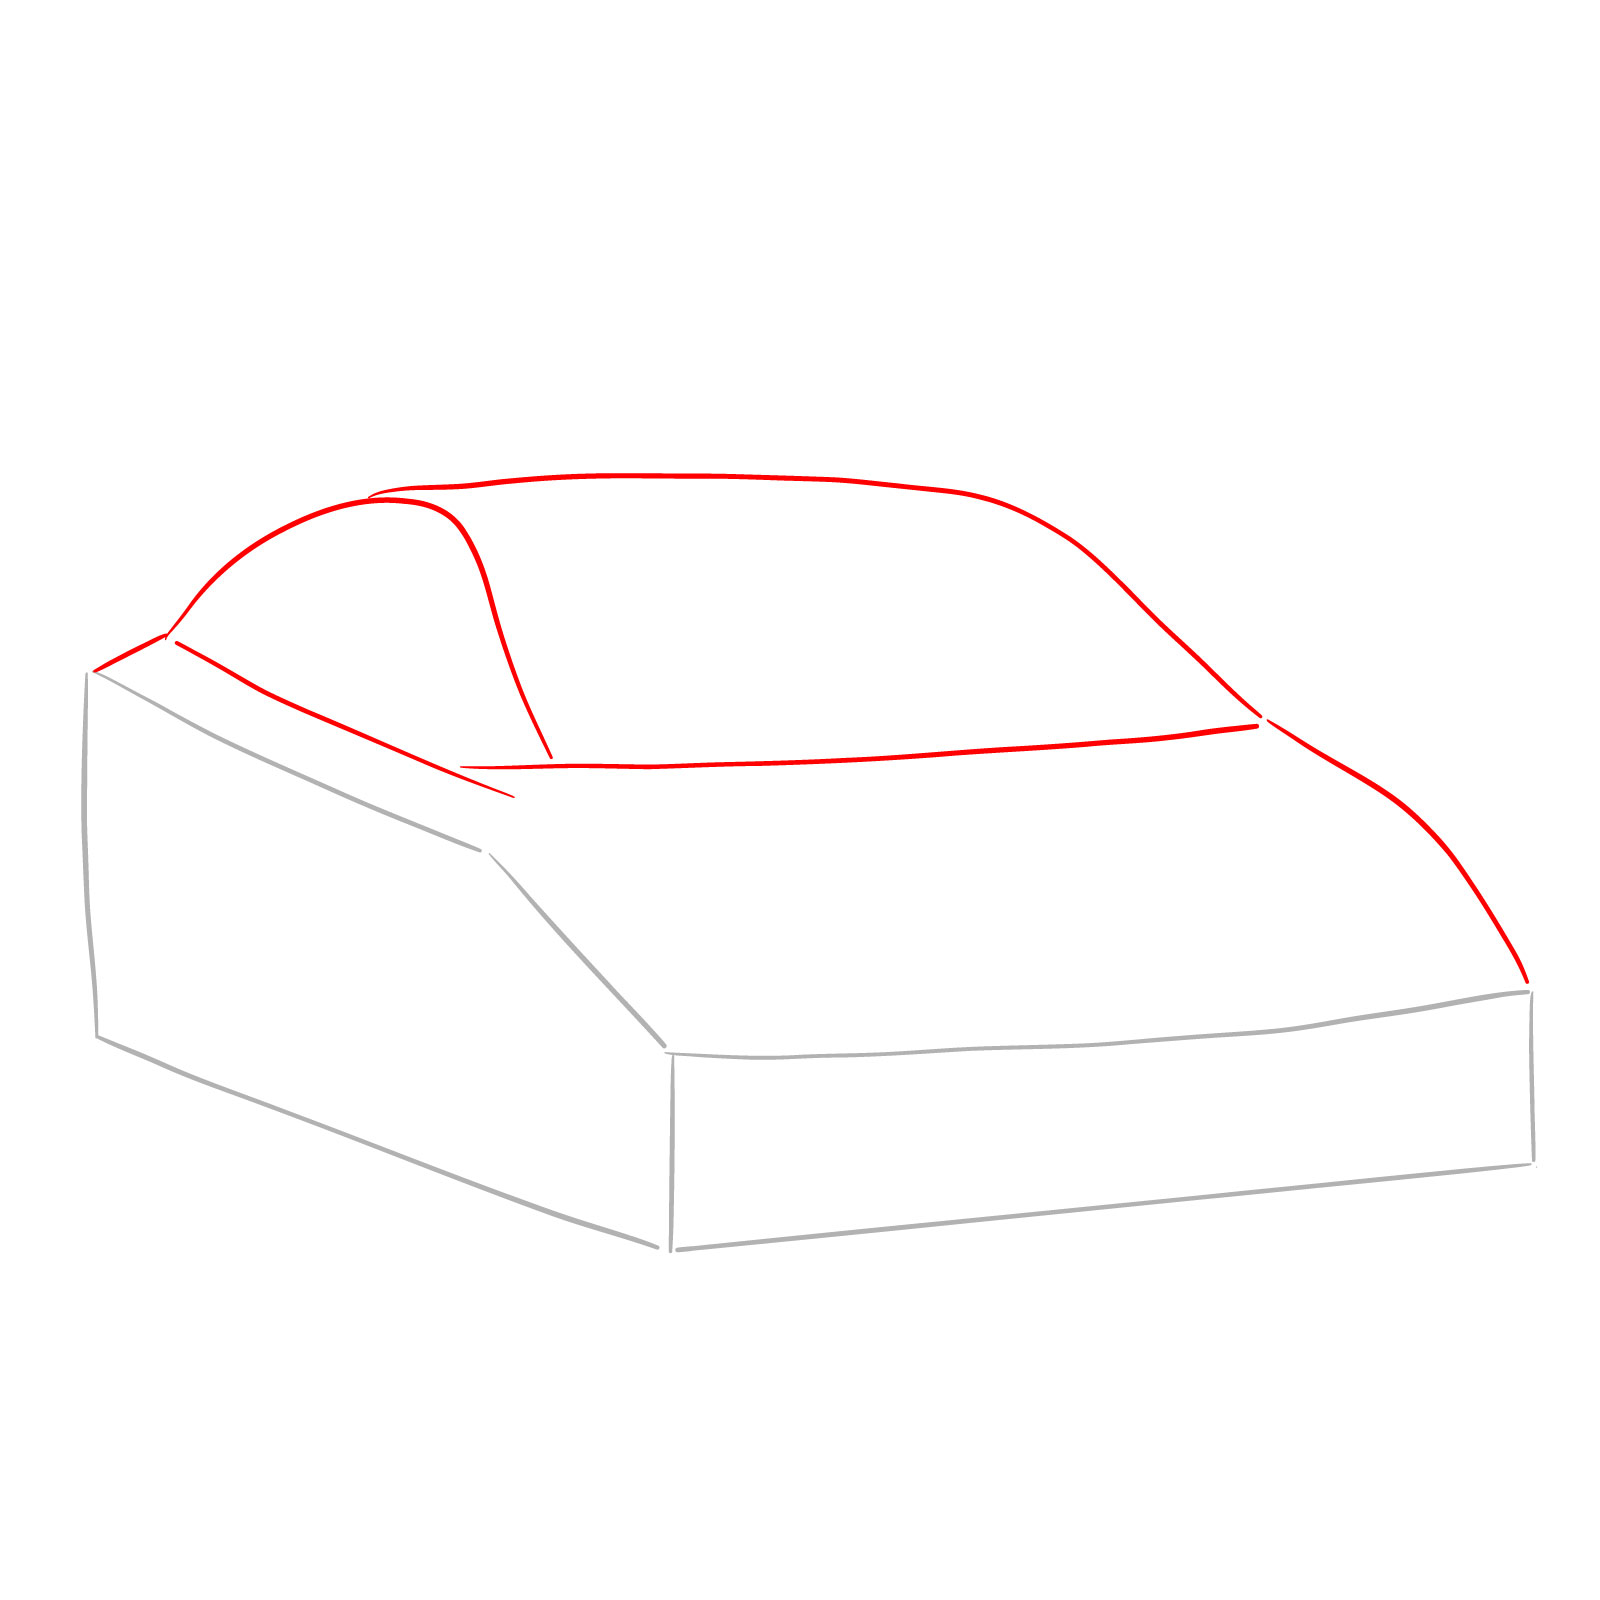 How to draw 2022 Subaru Impreza - step 02